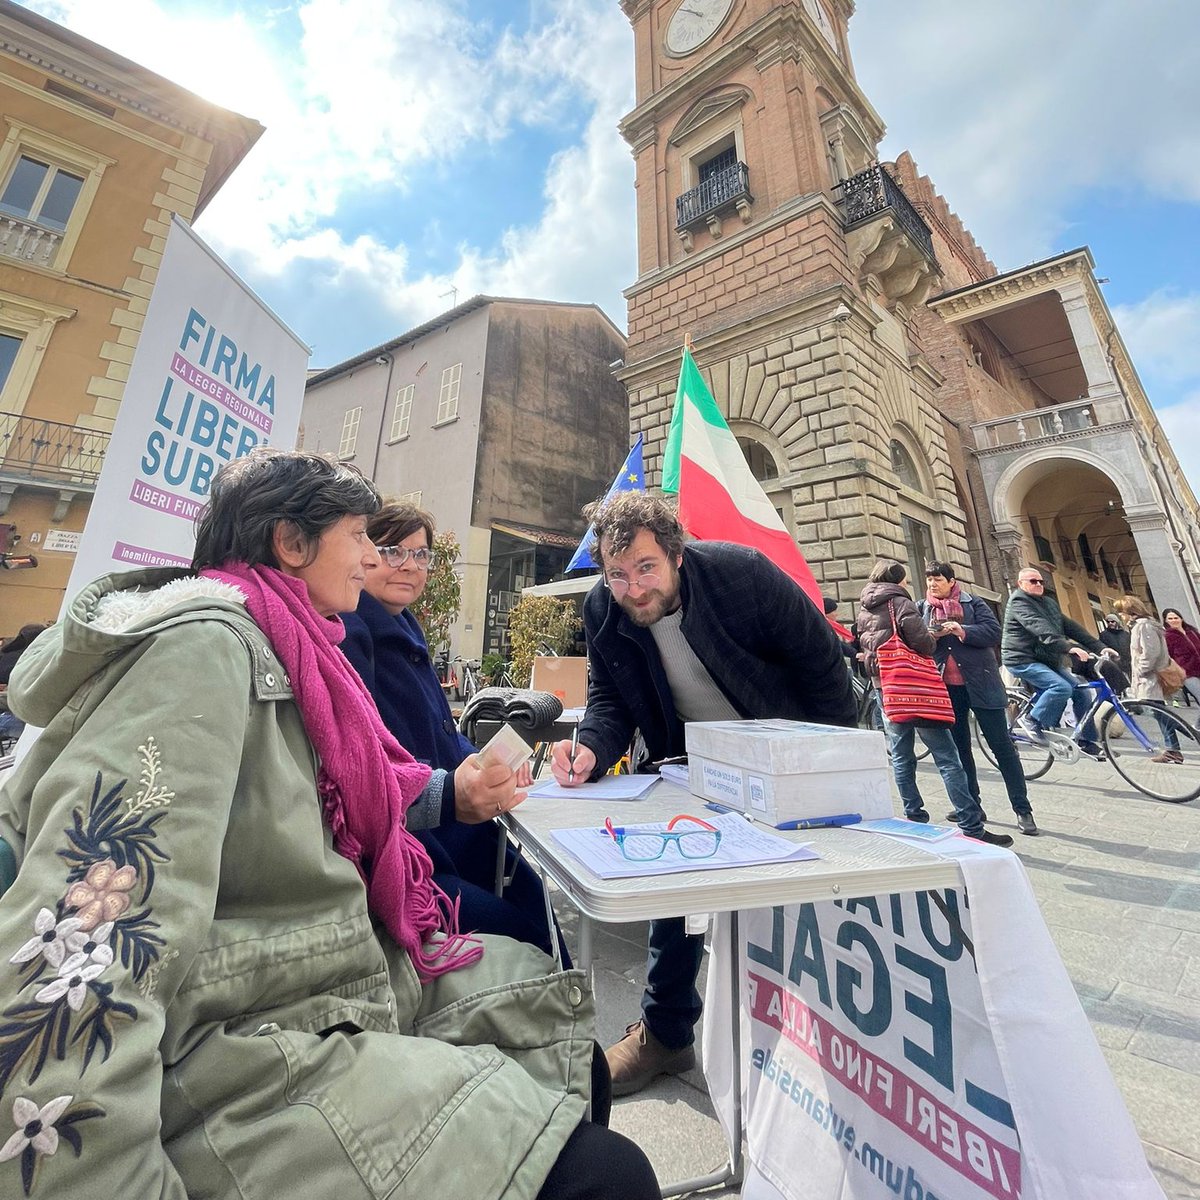 Oggi ho firmato per la Legge Regionale sul #finevita
Ogni sabato di aprile c'è banchetto in Piazza del Popolo a Faenza dove poter firmare 😃
#liberifinoallafine #eutanasialegale